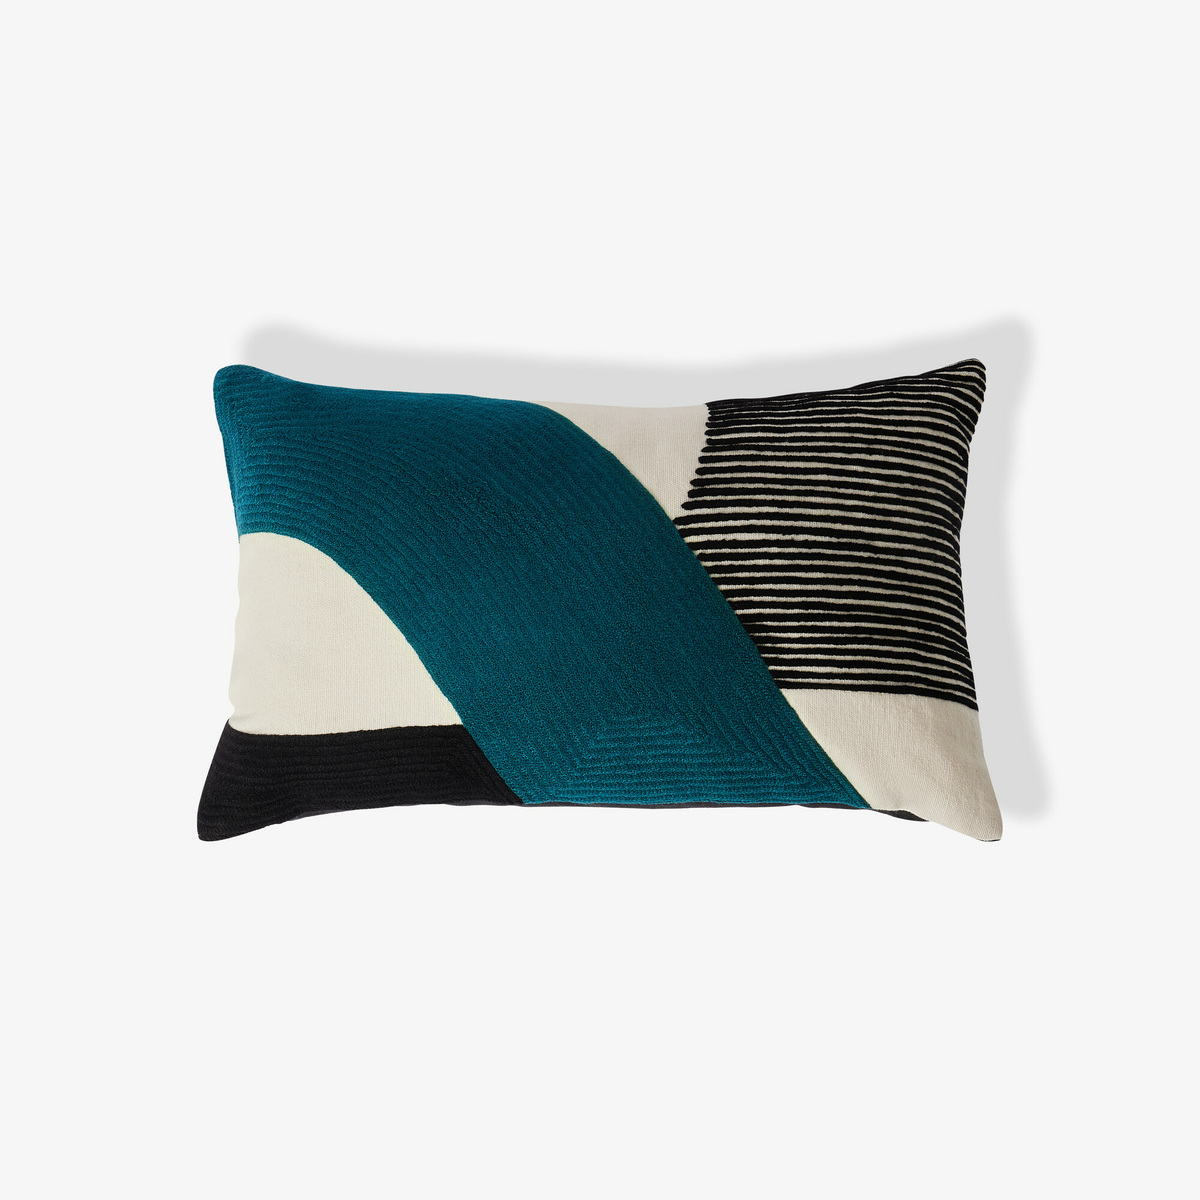 Azimut Pillow, Sarah Blue 50 x 30 cm - image 1